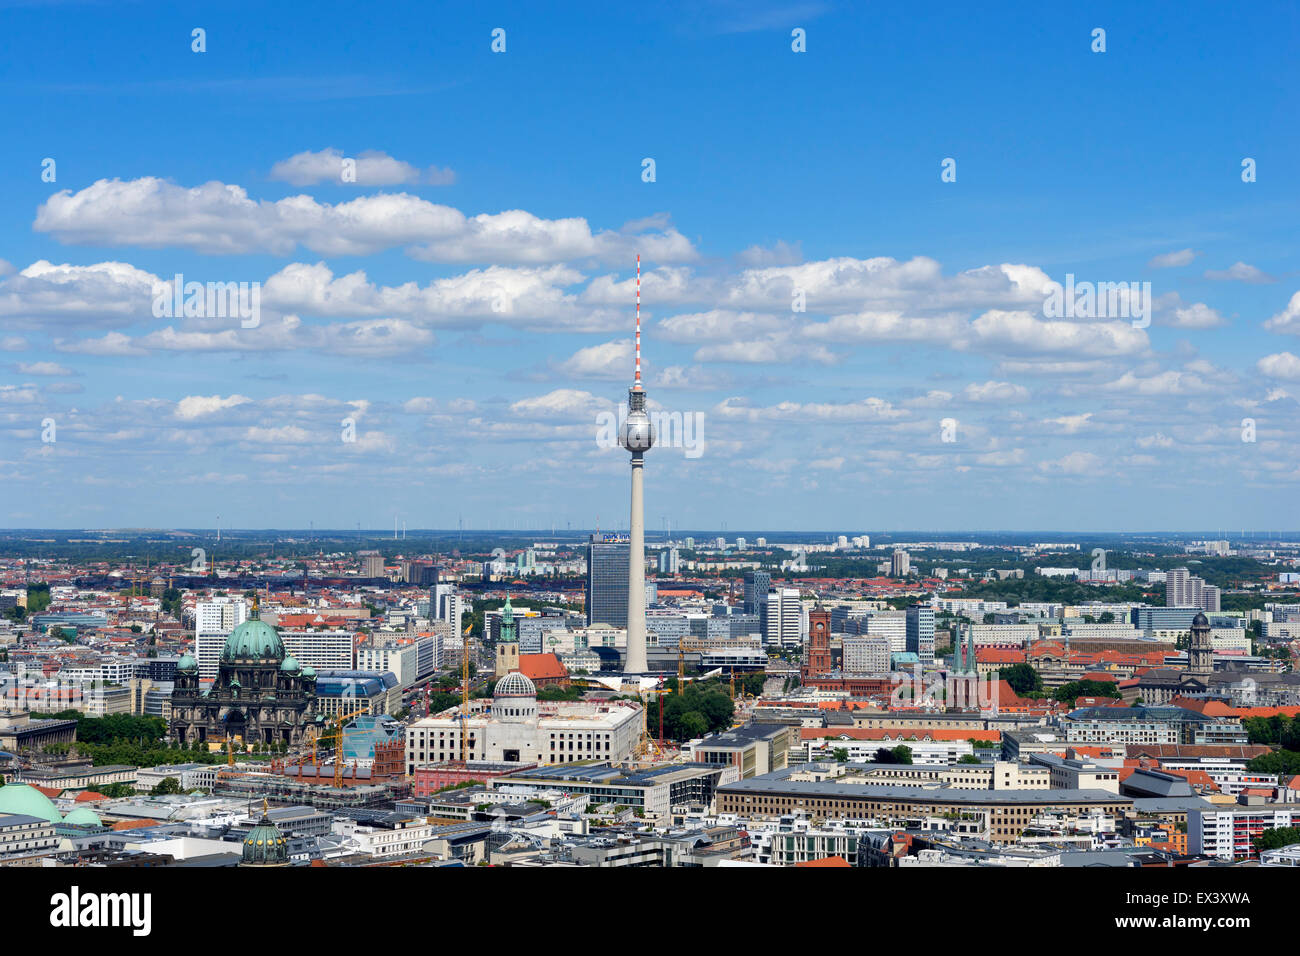 Vistas diurnas de Berlín con la torre de televisión Fernsehturm o en Alemania Foto de stock